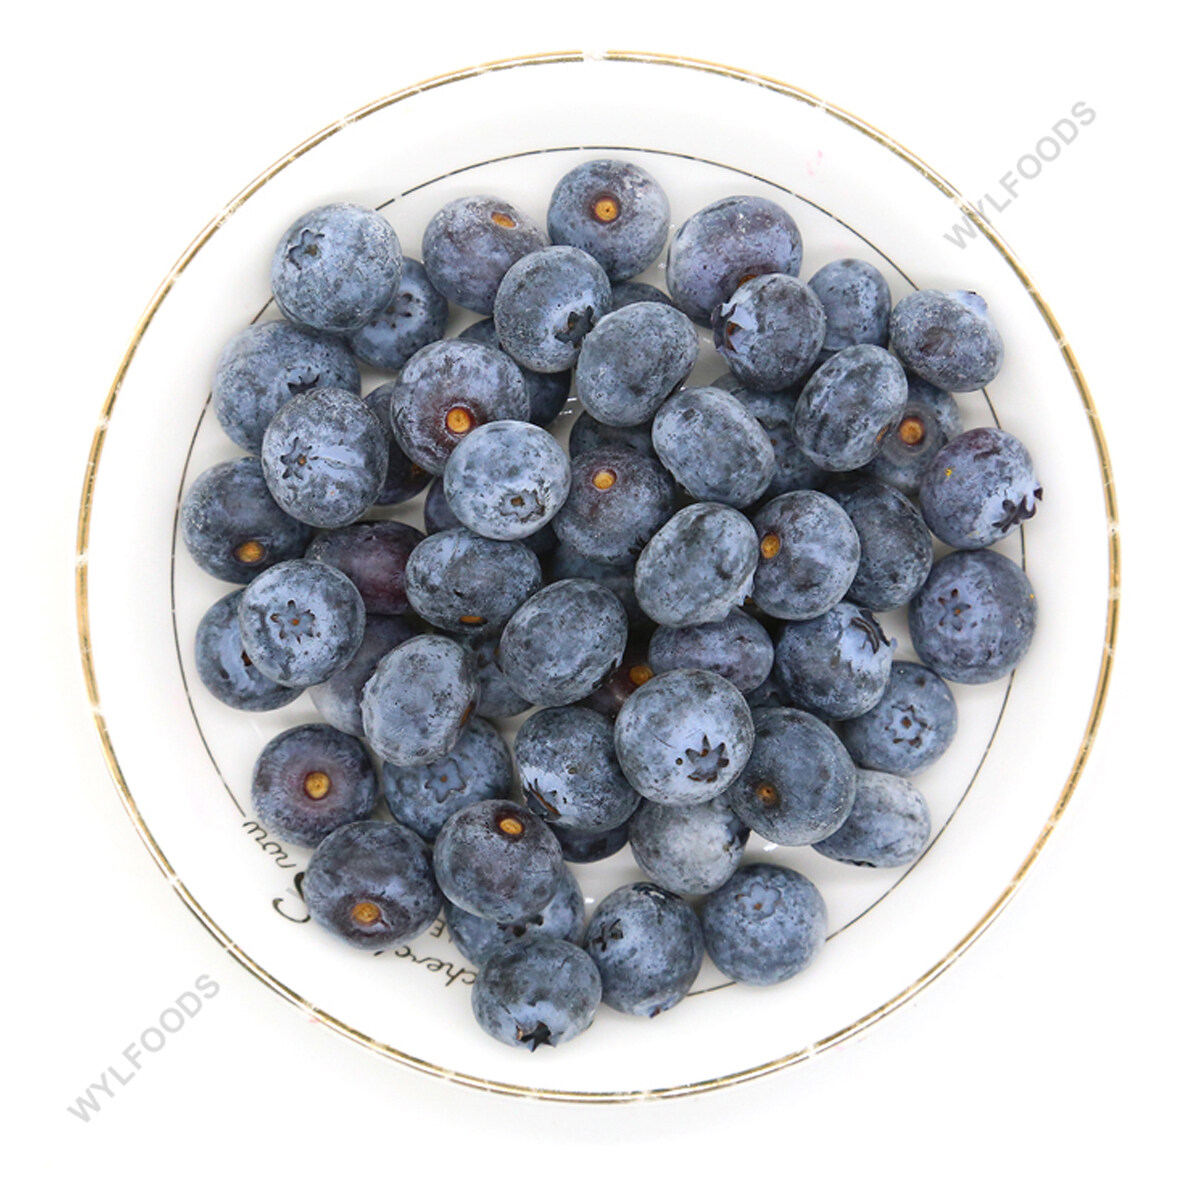 Wholesale frozen blueberry, Supply wild frozen blueberries, blueberry frozen fruit Factory, haccp frozen blueberry Sales, frozen blueberry 8-12mm